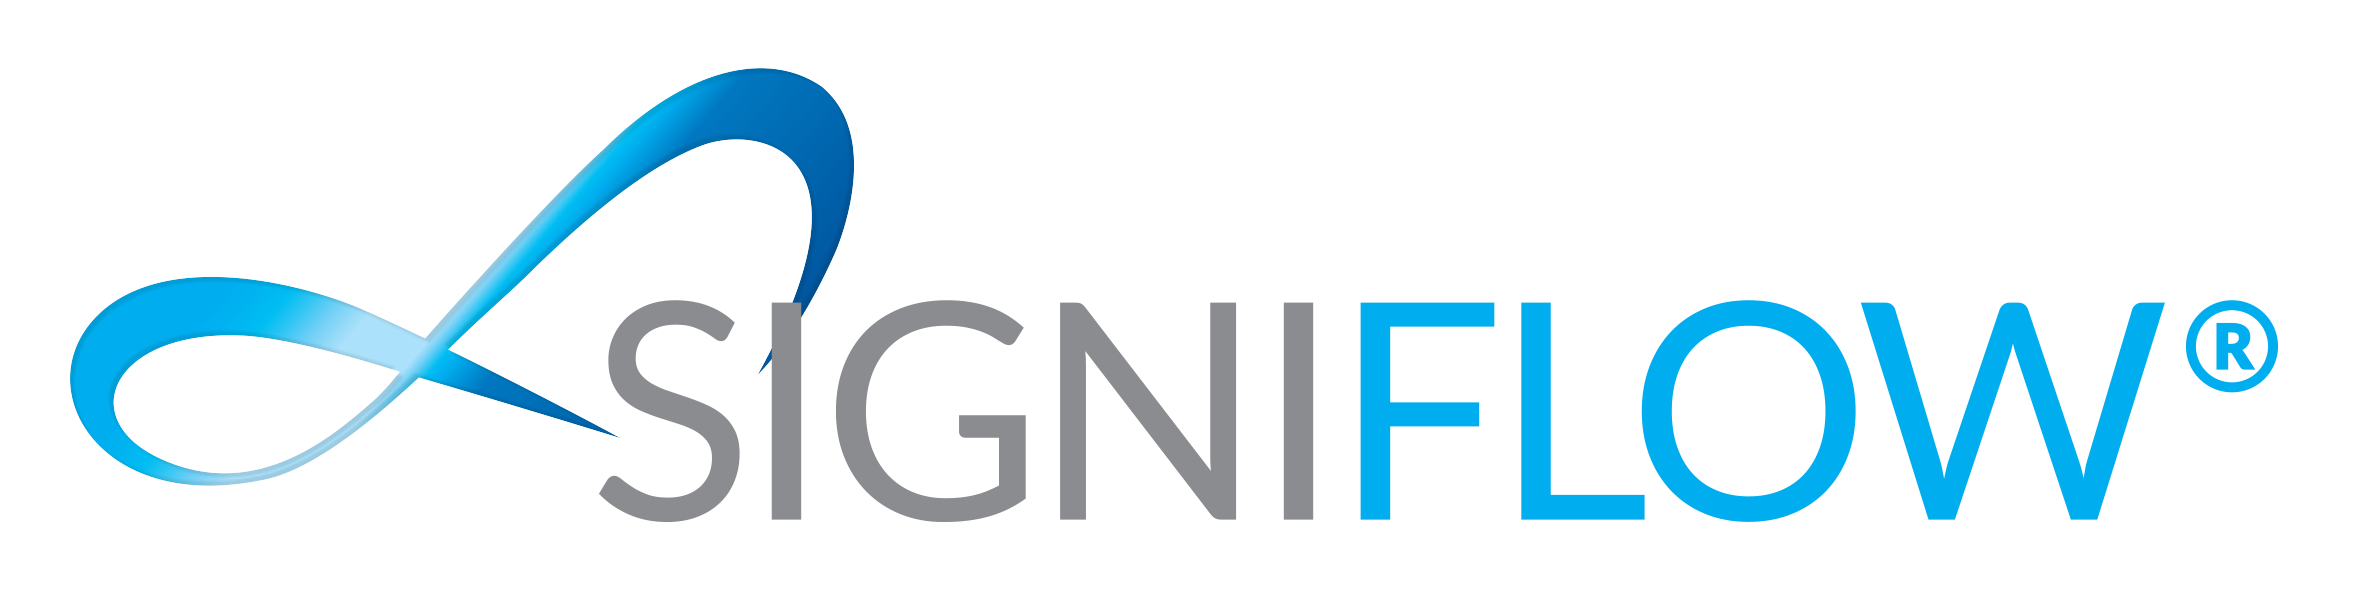 SigniFlow_Logo.png